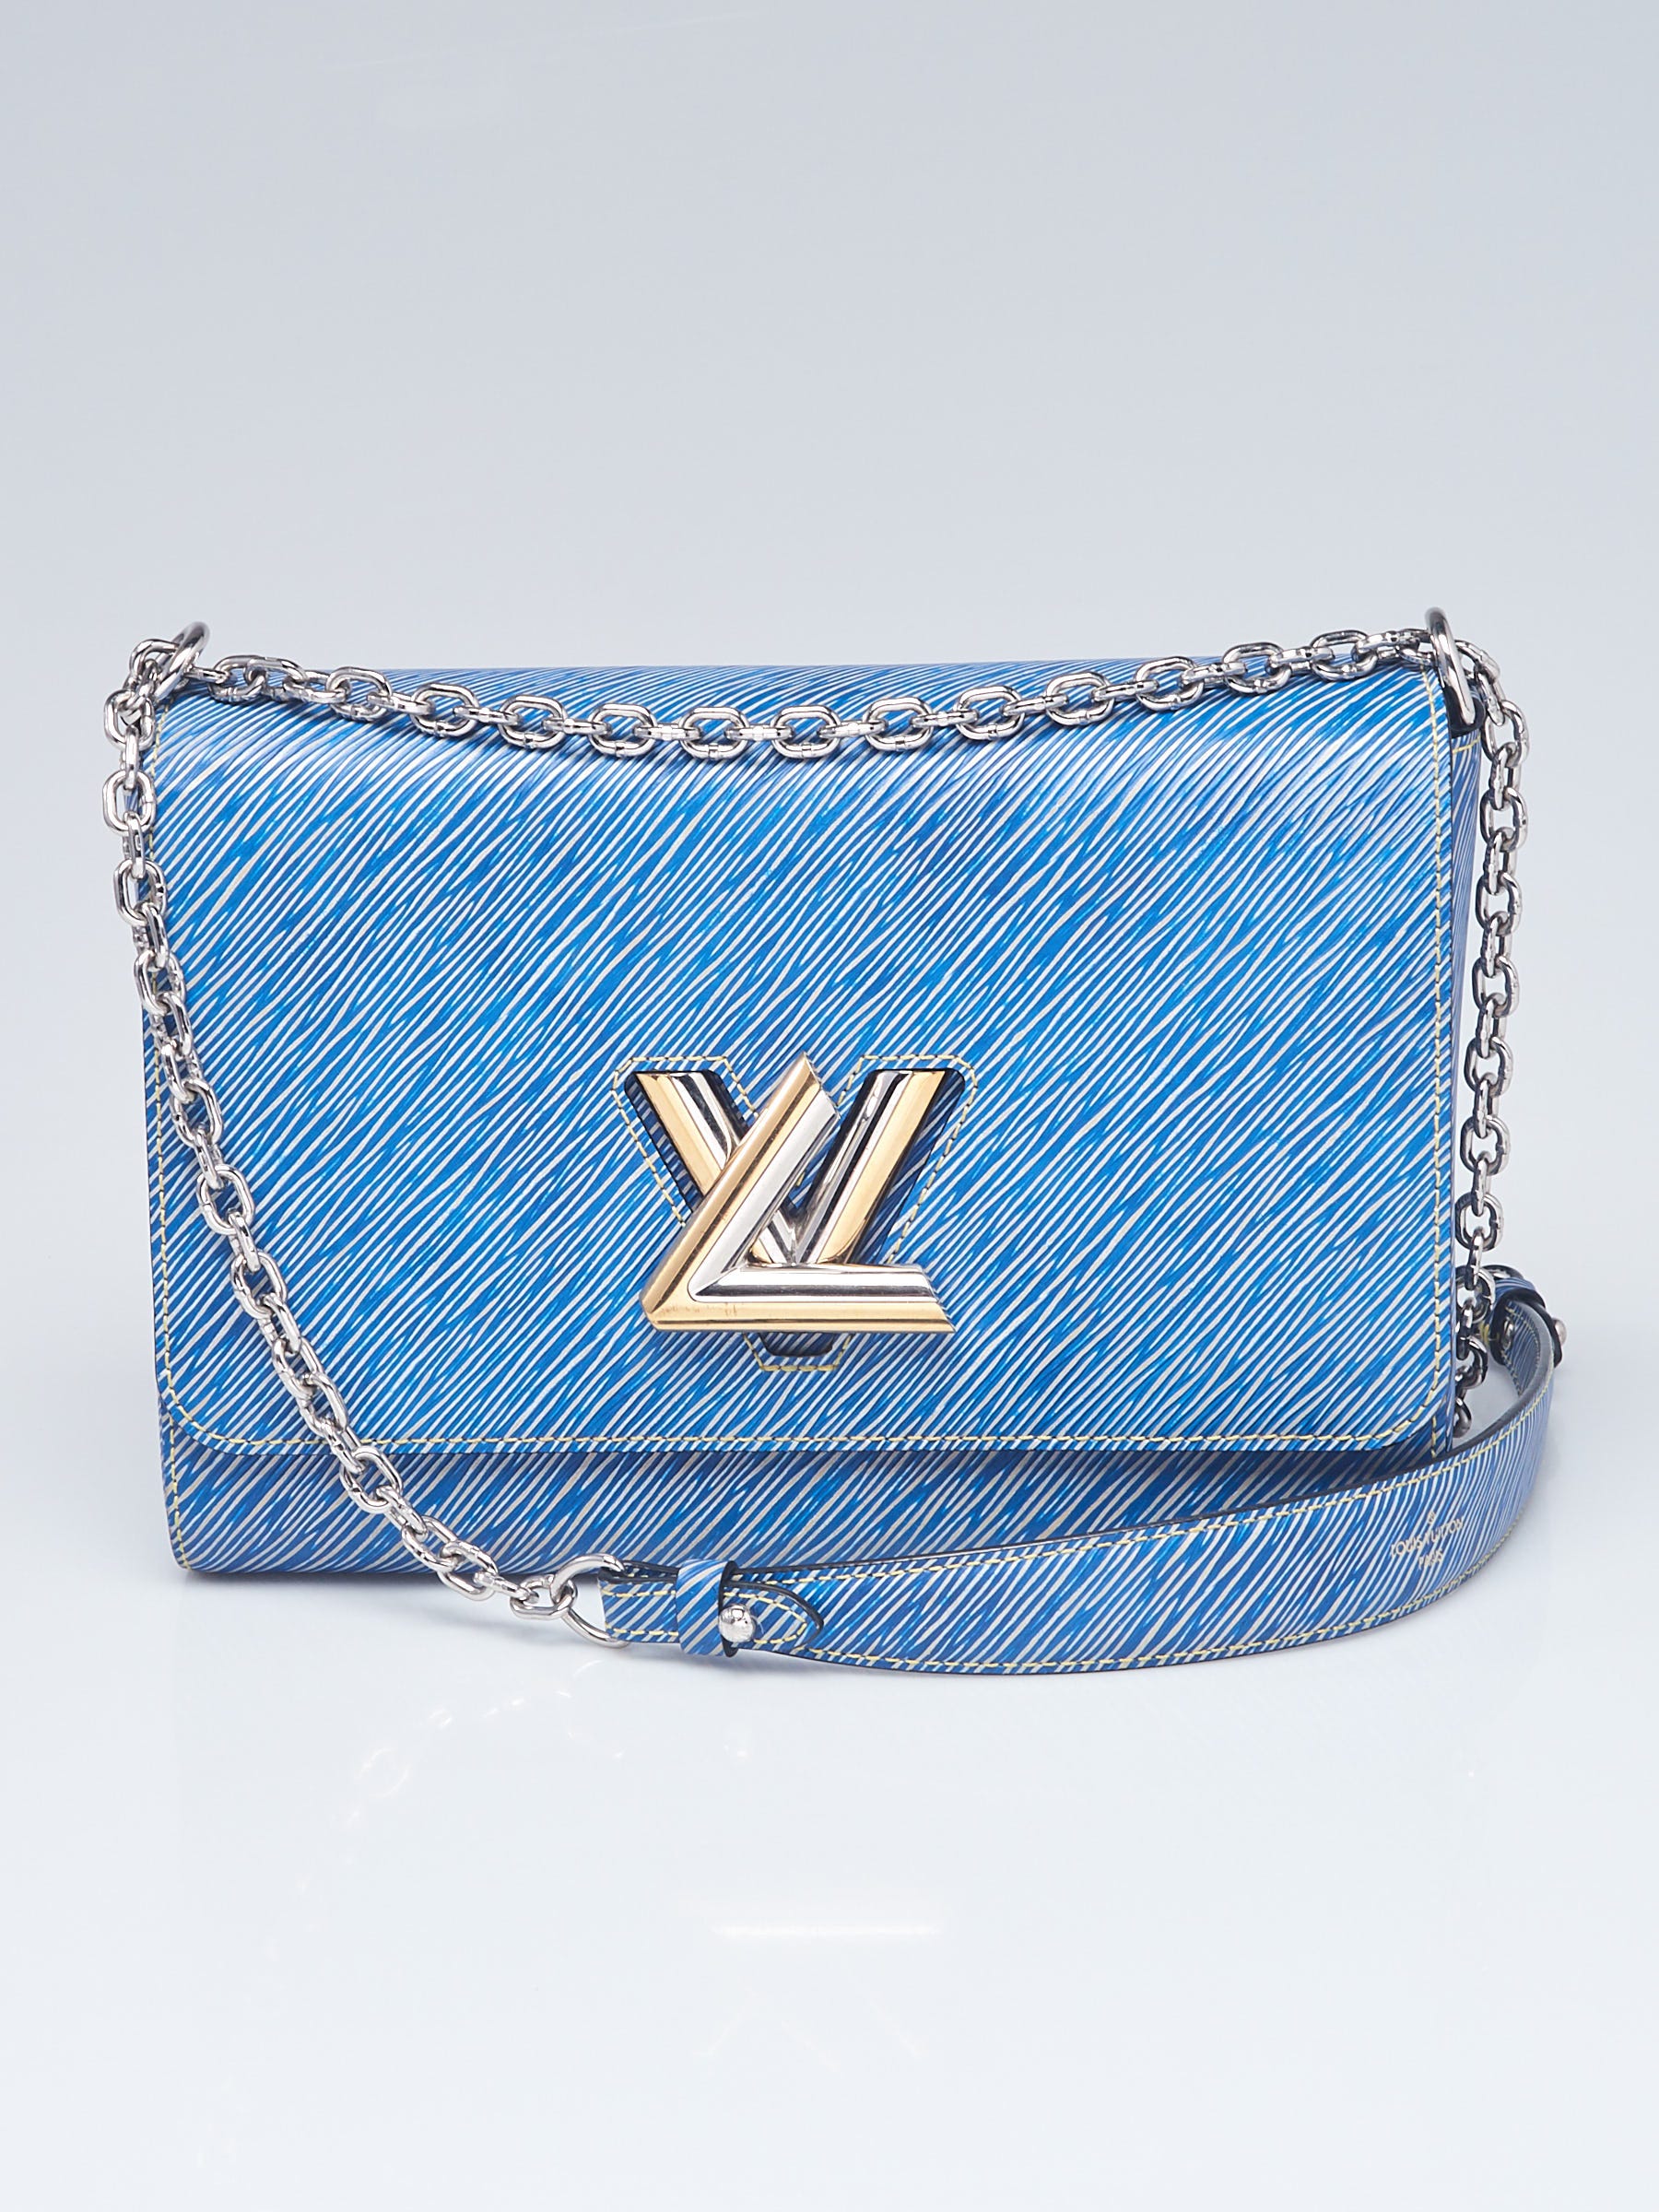 Louis Vuitton Twist MM Blue Denim Epi Leather Shoulder Bag